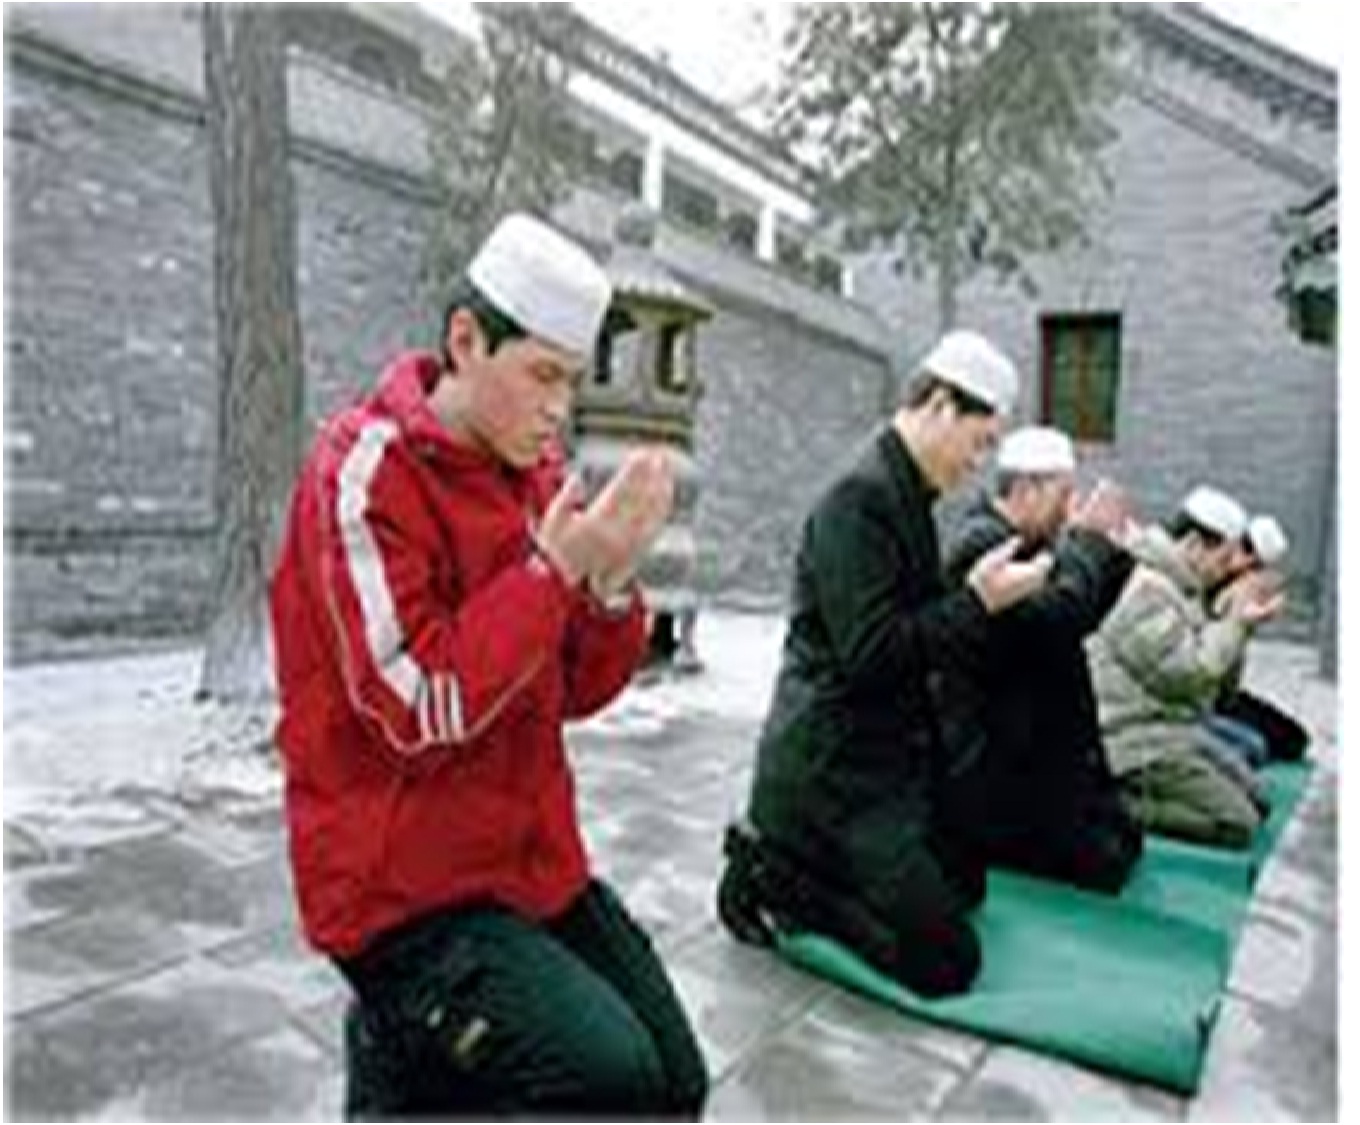 6240 الاسلام في الصين - تعالوا نعرف ازي دخل هناك ام عبدالعزيز